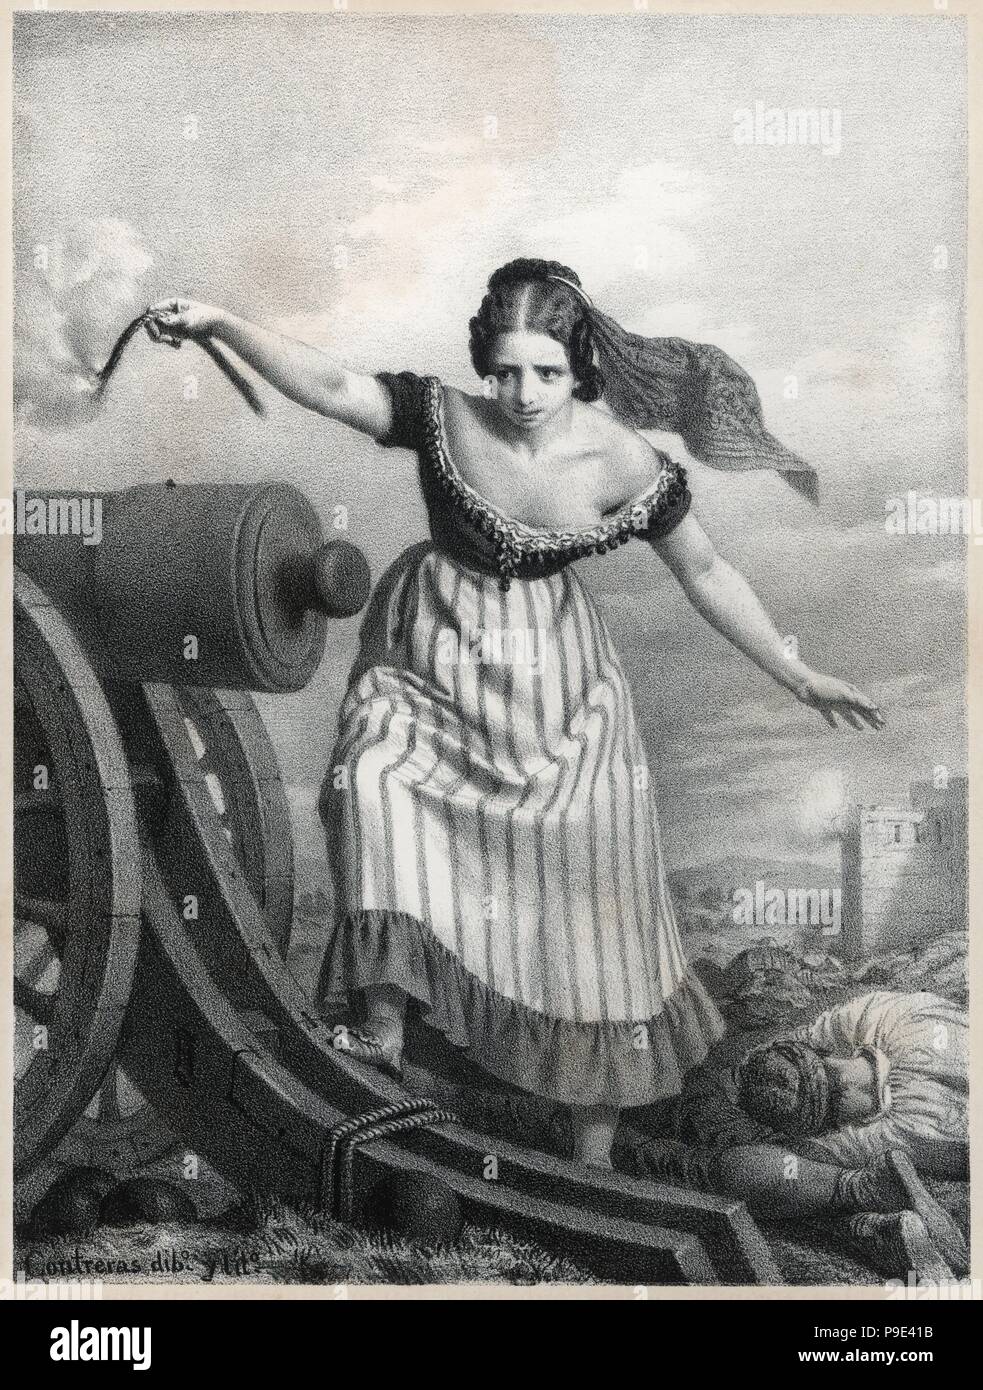 Agustina Zaragoza Doménech (1786-1857), heroína del sitio de Zaragoza, conocida como Agustina de Aragón. Grabado de 1868. Stock Photo